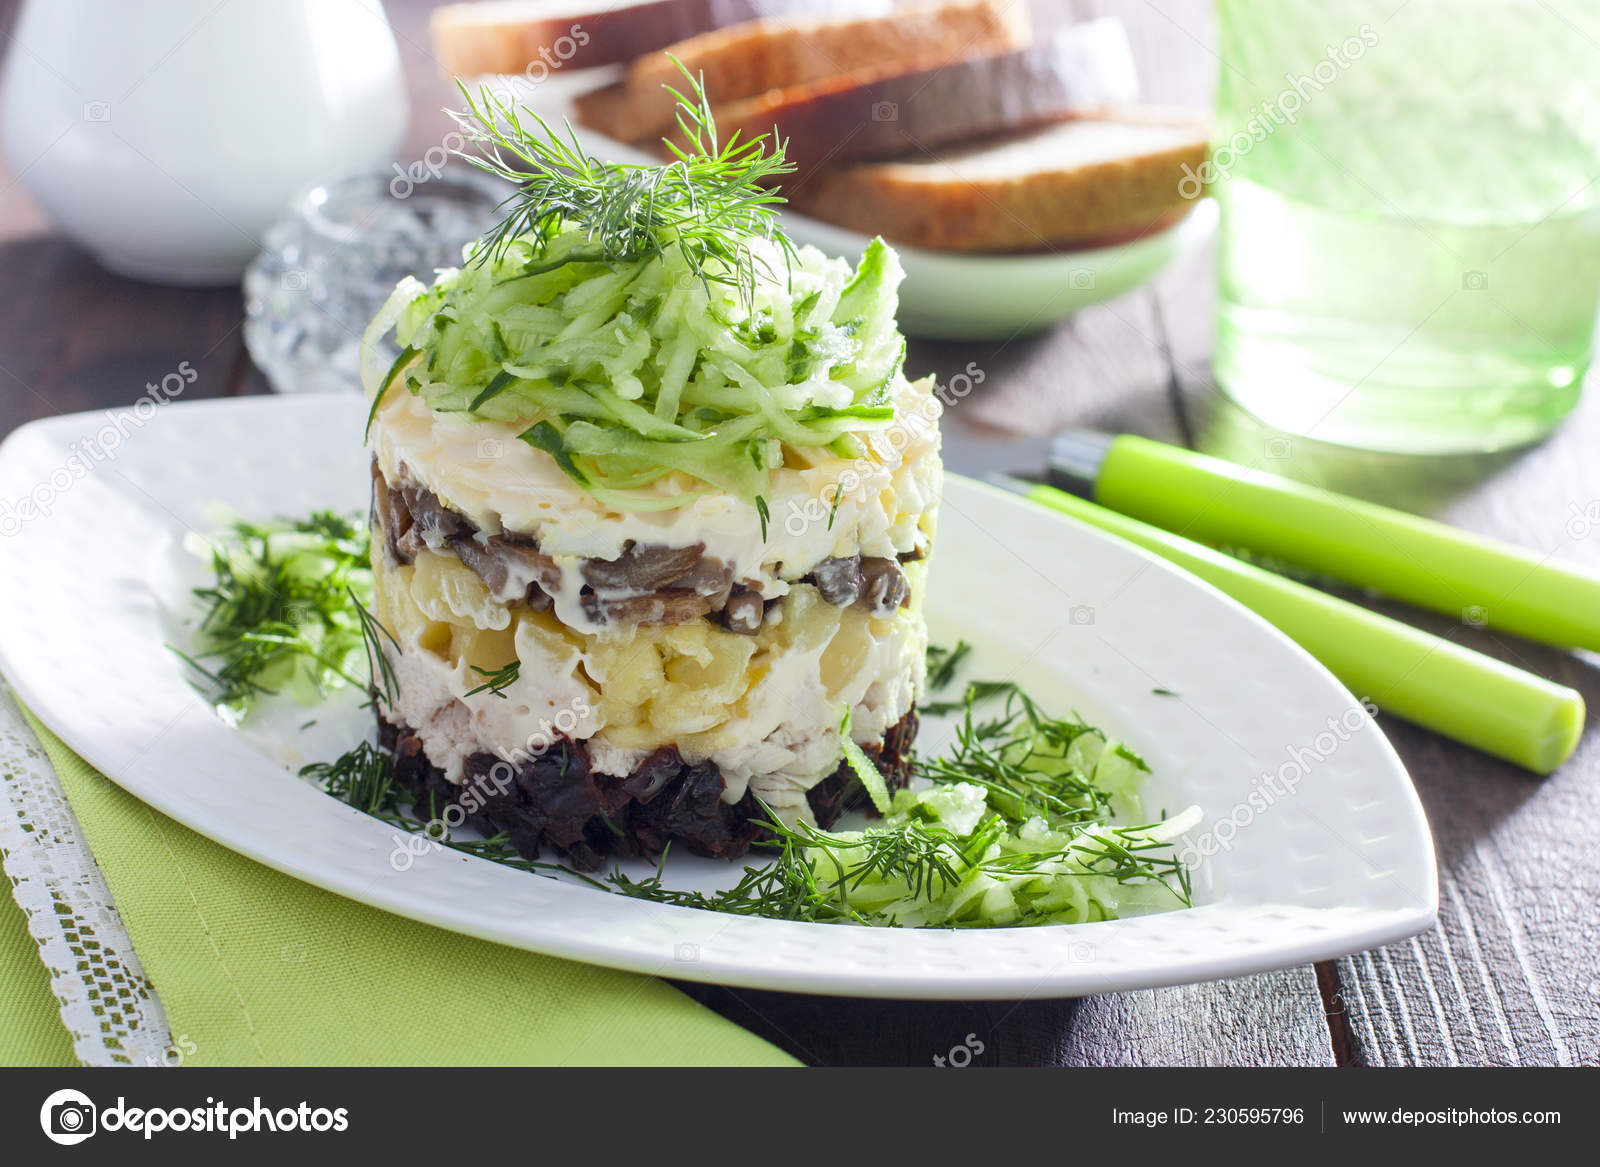 Салат с черносливом слоями рецепт